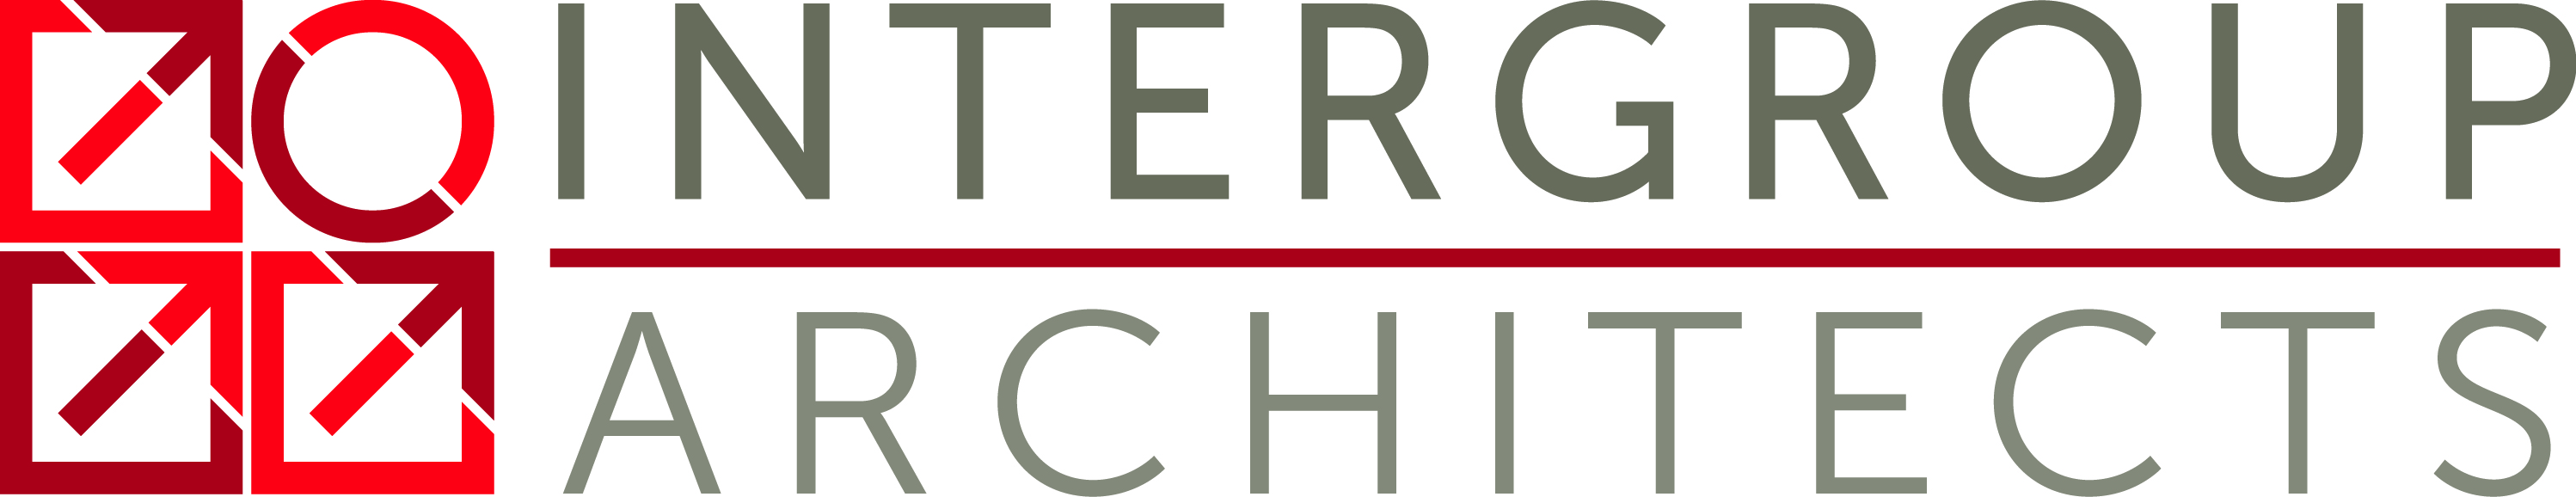 Intergroup Architects Logo